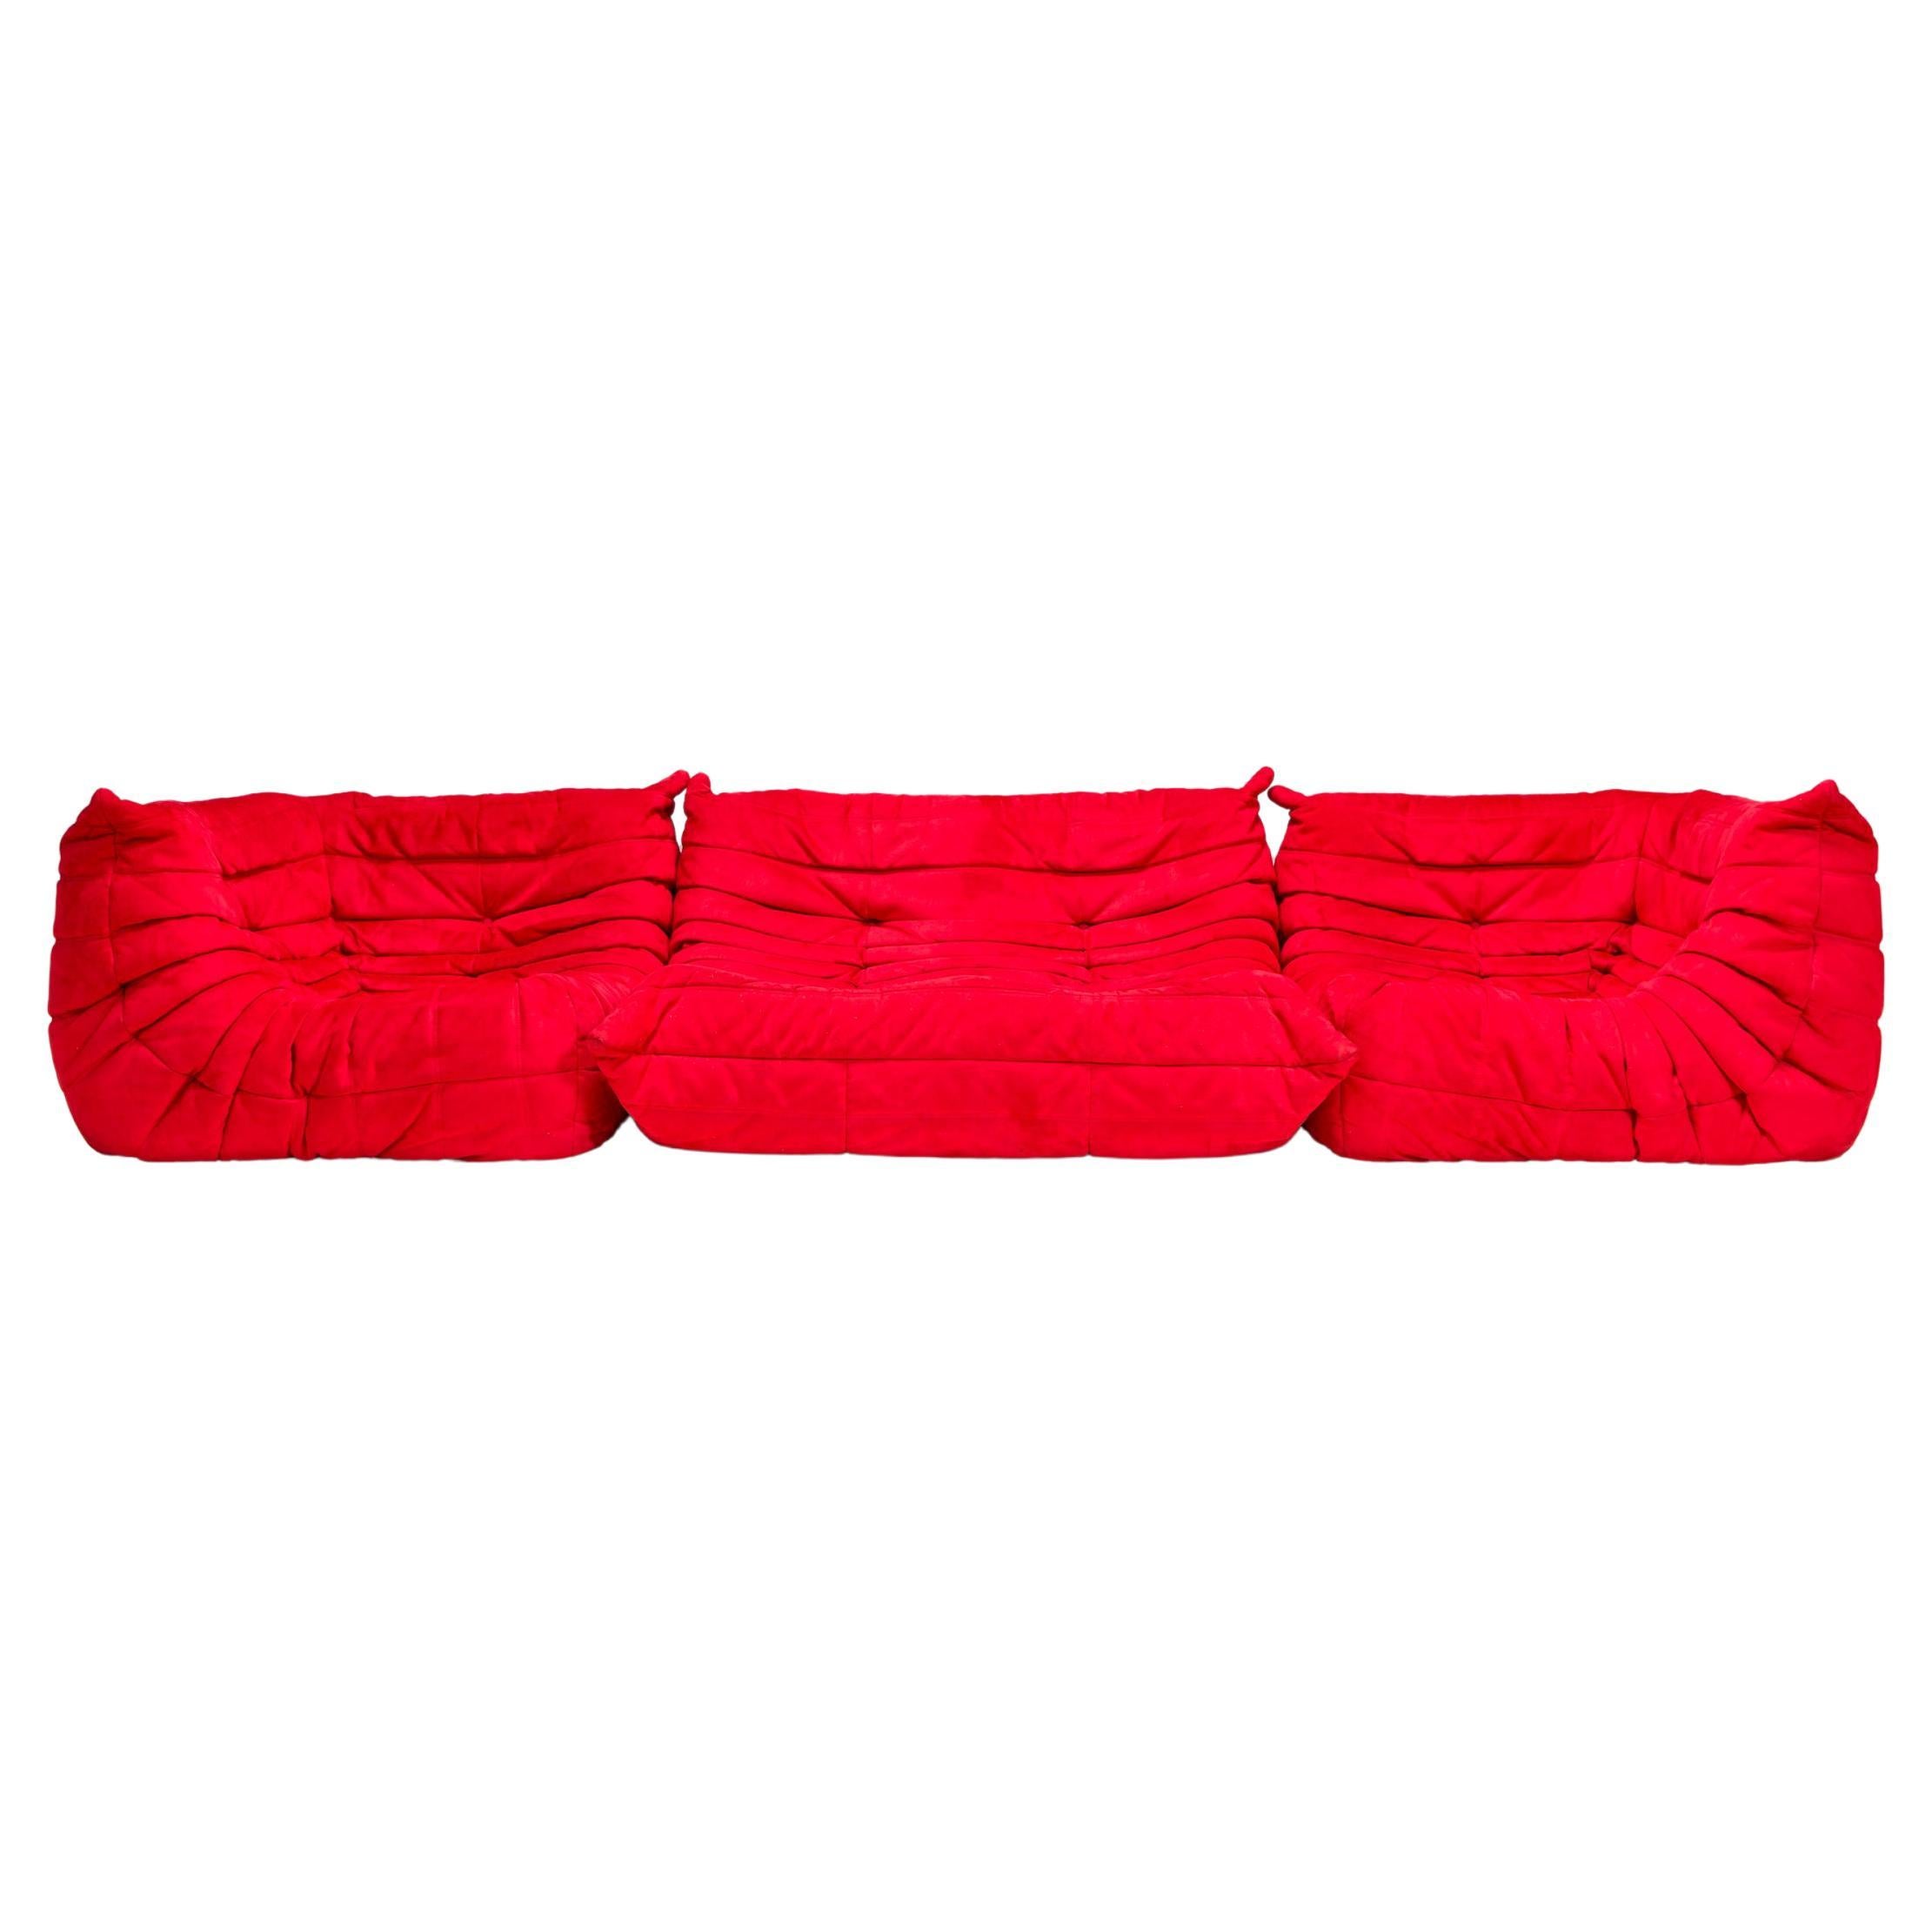 Set aus drei Togo-Sofa aus rotem Stoff in Ligne Roset von Michel Ducaroy-Stoff